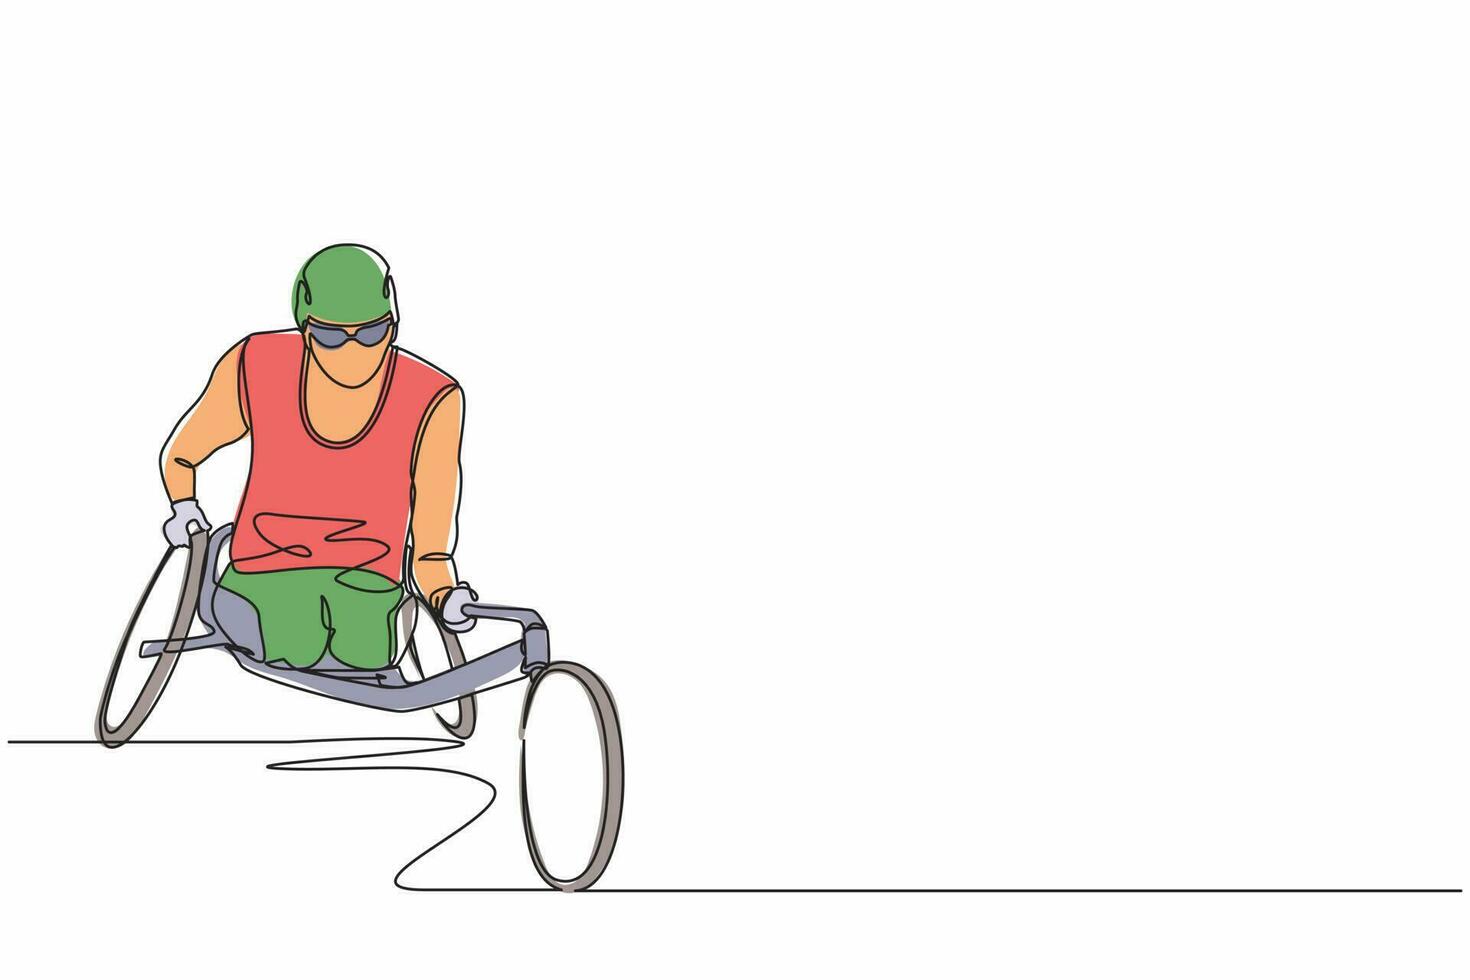 course de dessin en ligne continue sur le fauteuil roulant de sport. sportif handicapé dans le tournoi de jeux. passe-temps et intérêts des personnes handicapées. illustration vectorielle de conception graphique d'une ligne vecteur